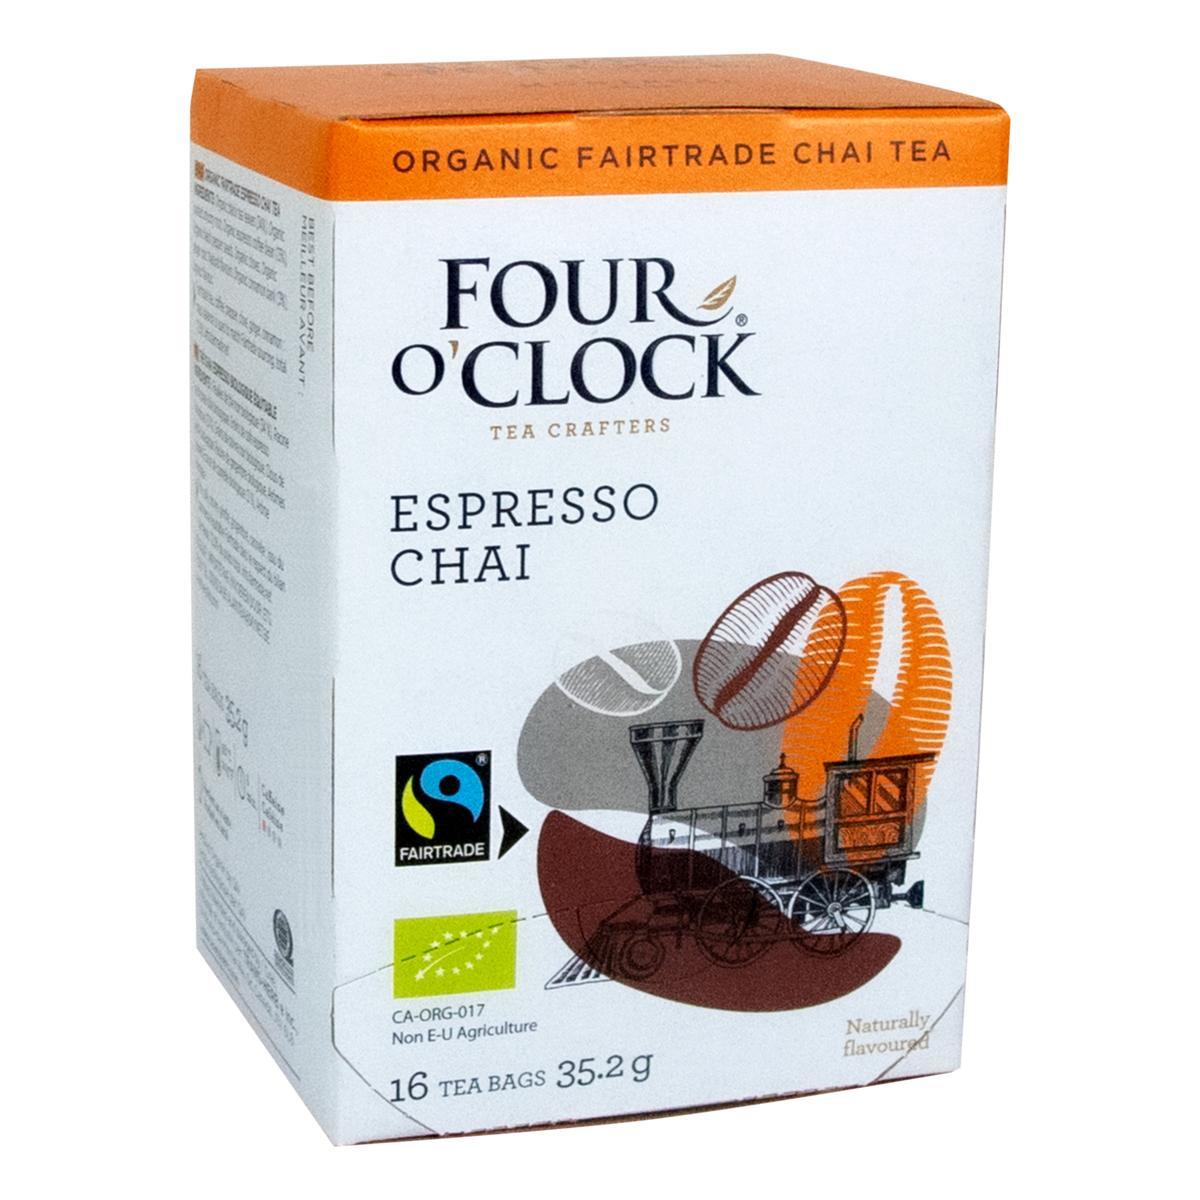 Four O’Clock's Four O'Clock ESPRESSO CHAI '